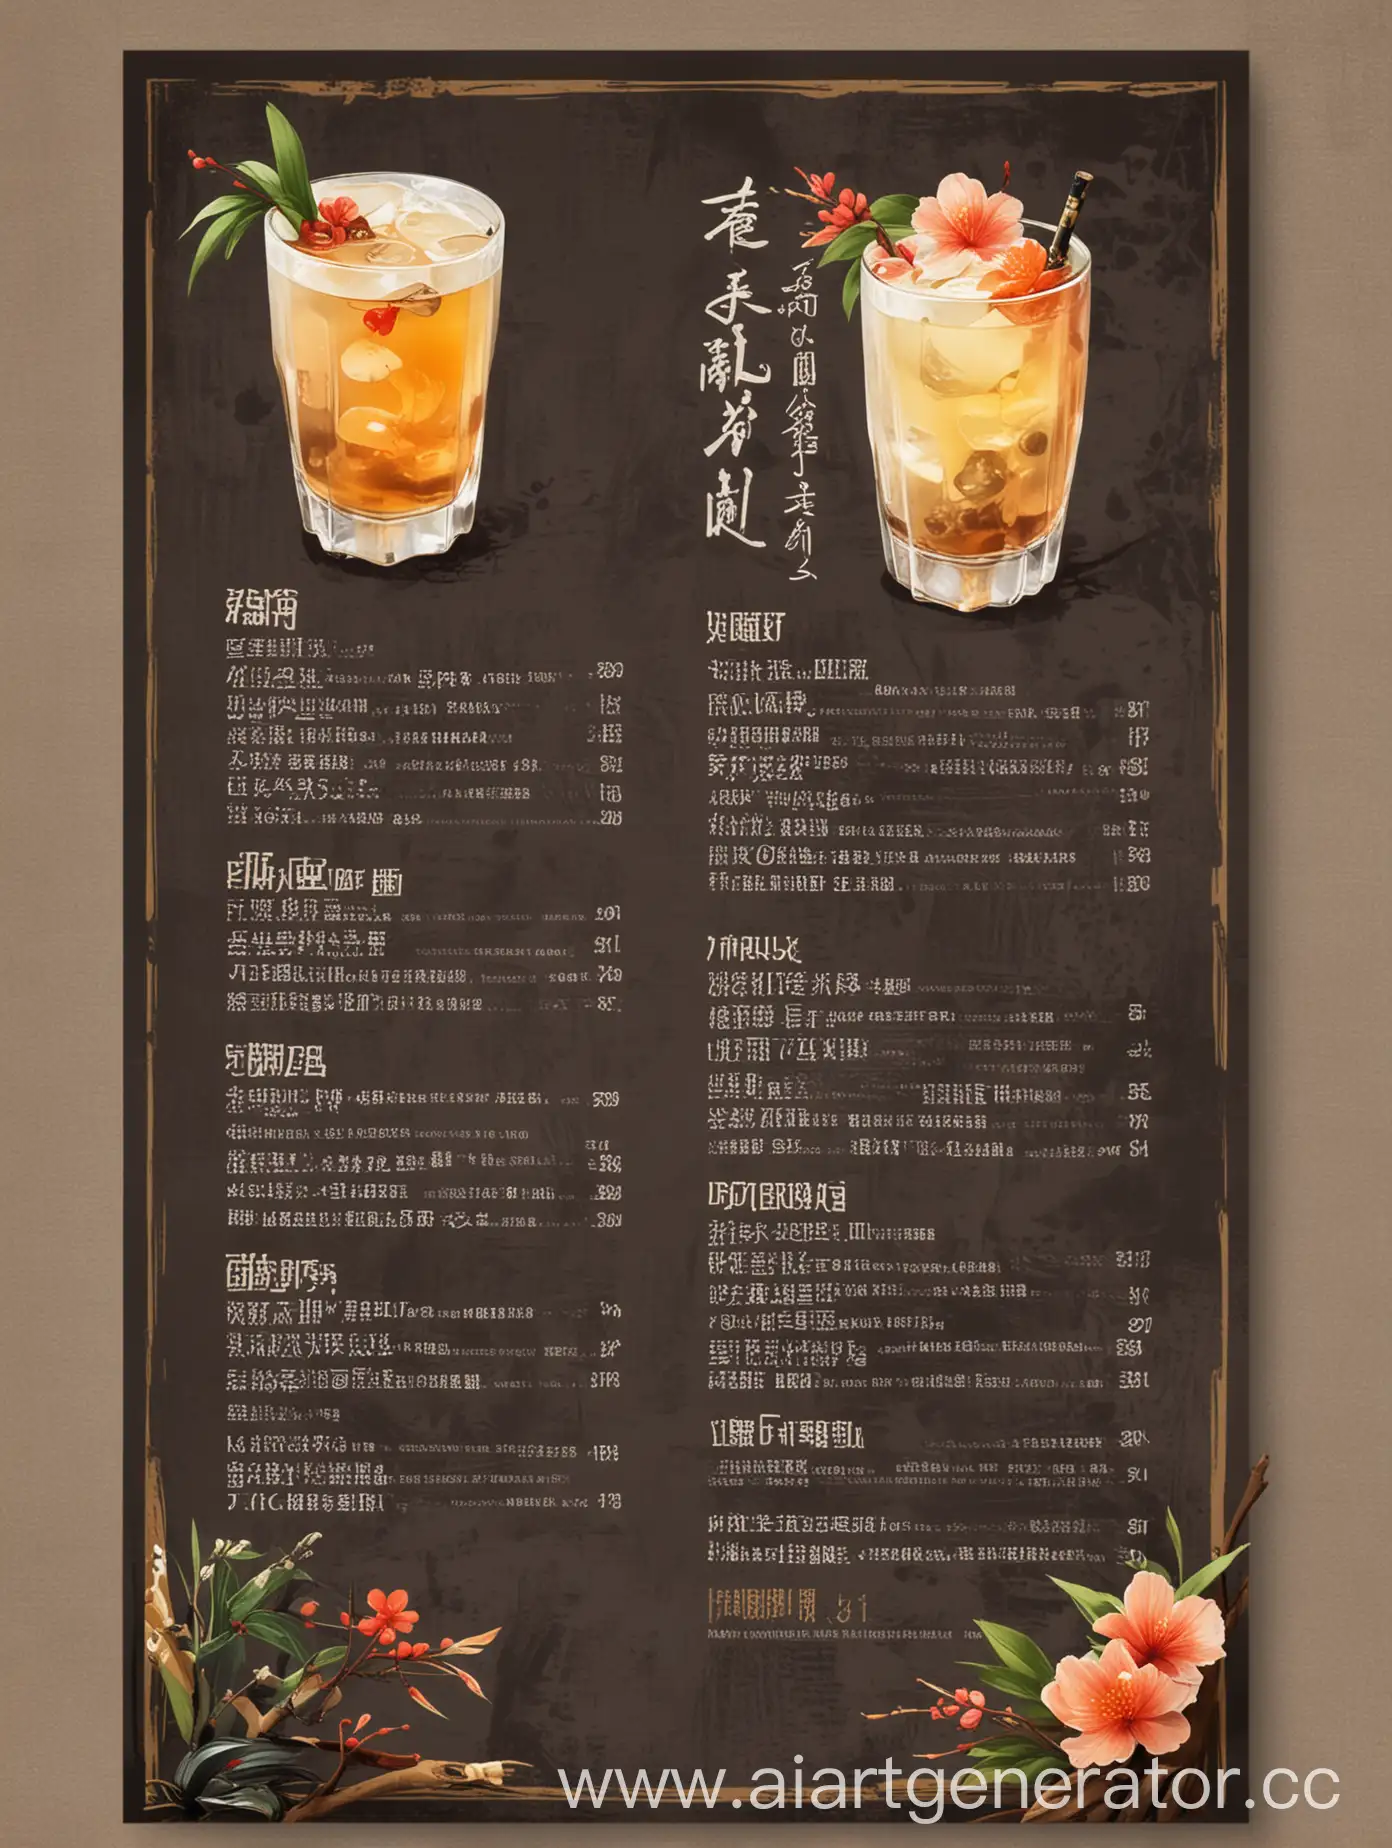 дизайн-макет меню напитков ресторана в азиатском стиле. Меню напитков - саке, традиционный японский чай и коктейли. Рядом с текстом изображение напитка, указанное в меню. Шрифт и изображения крупные.